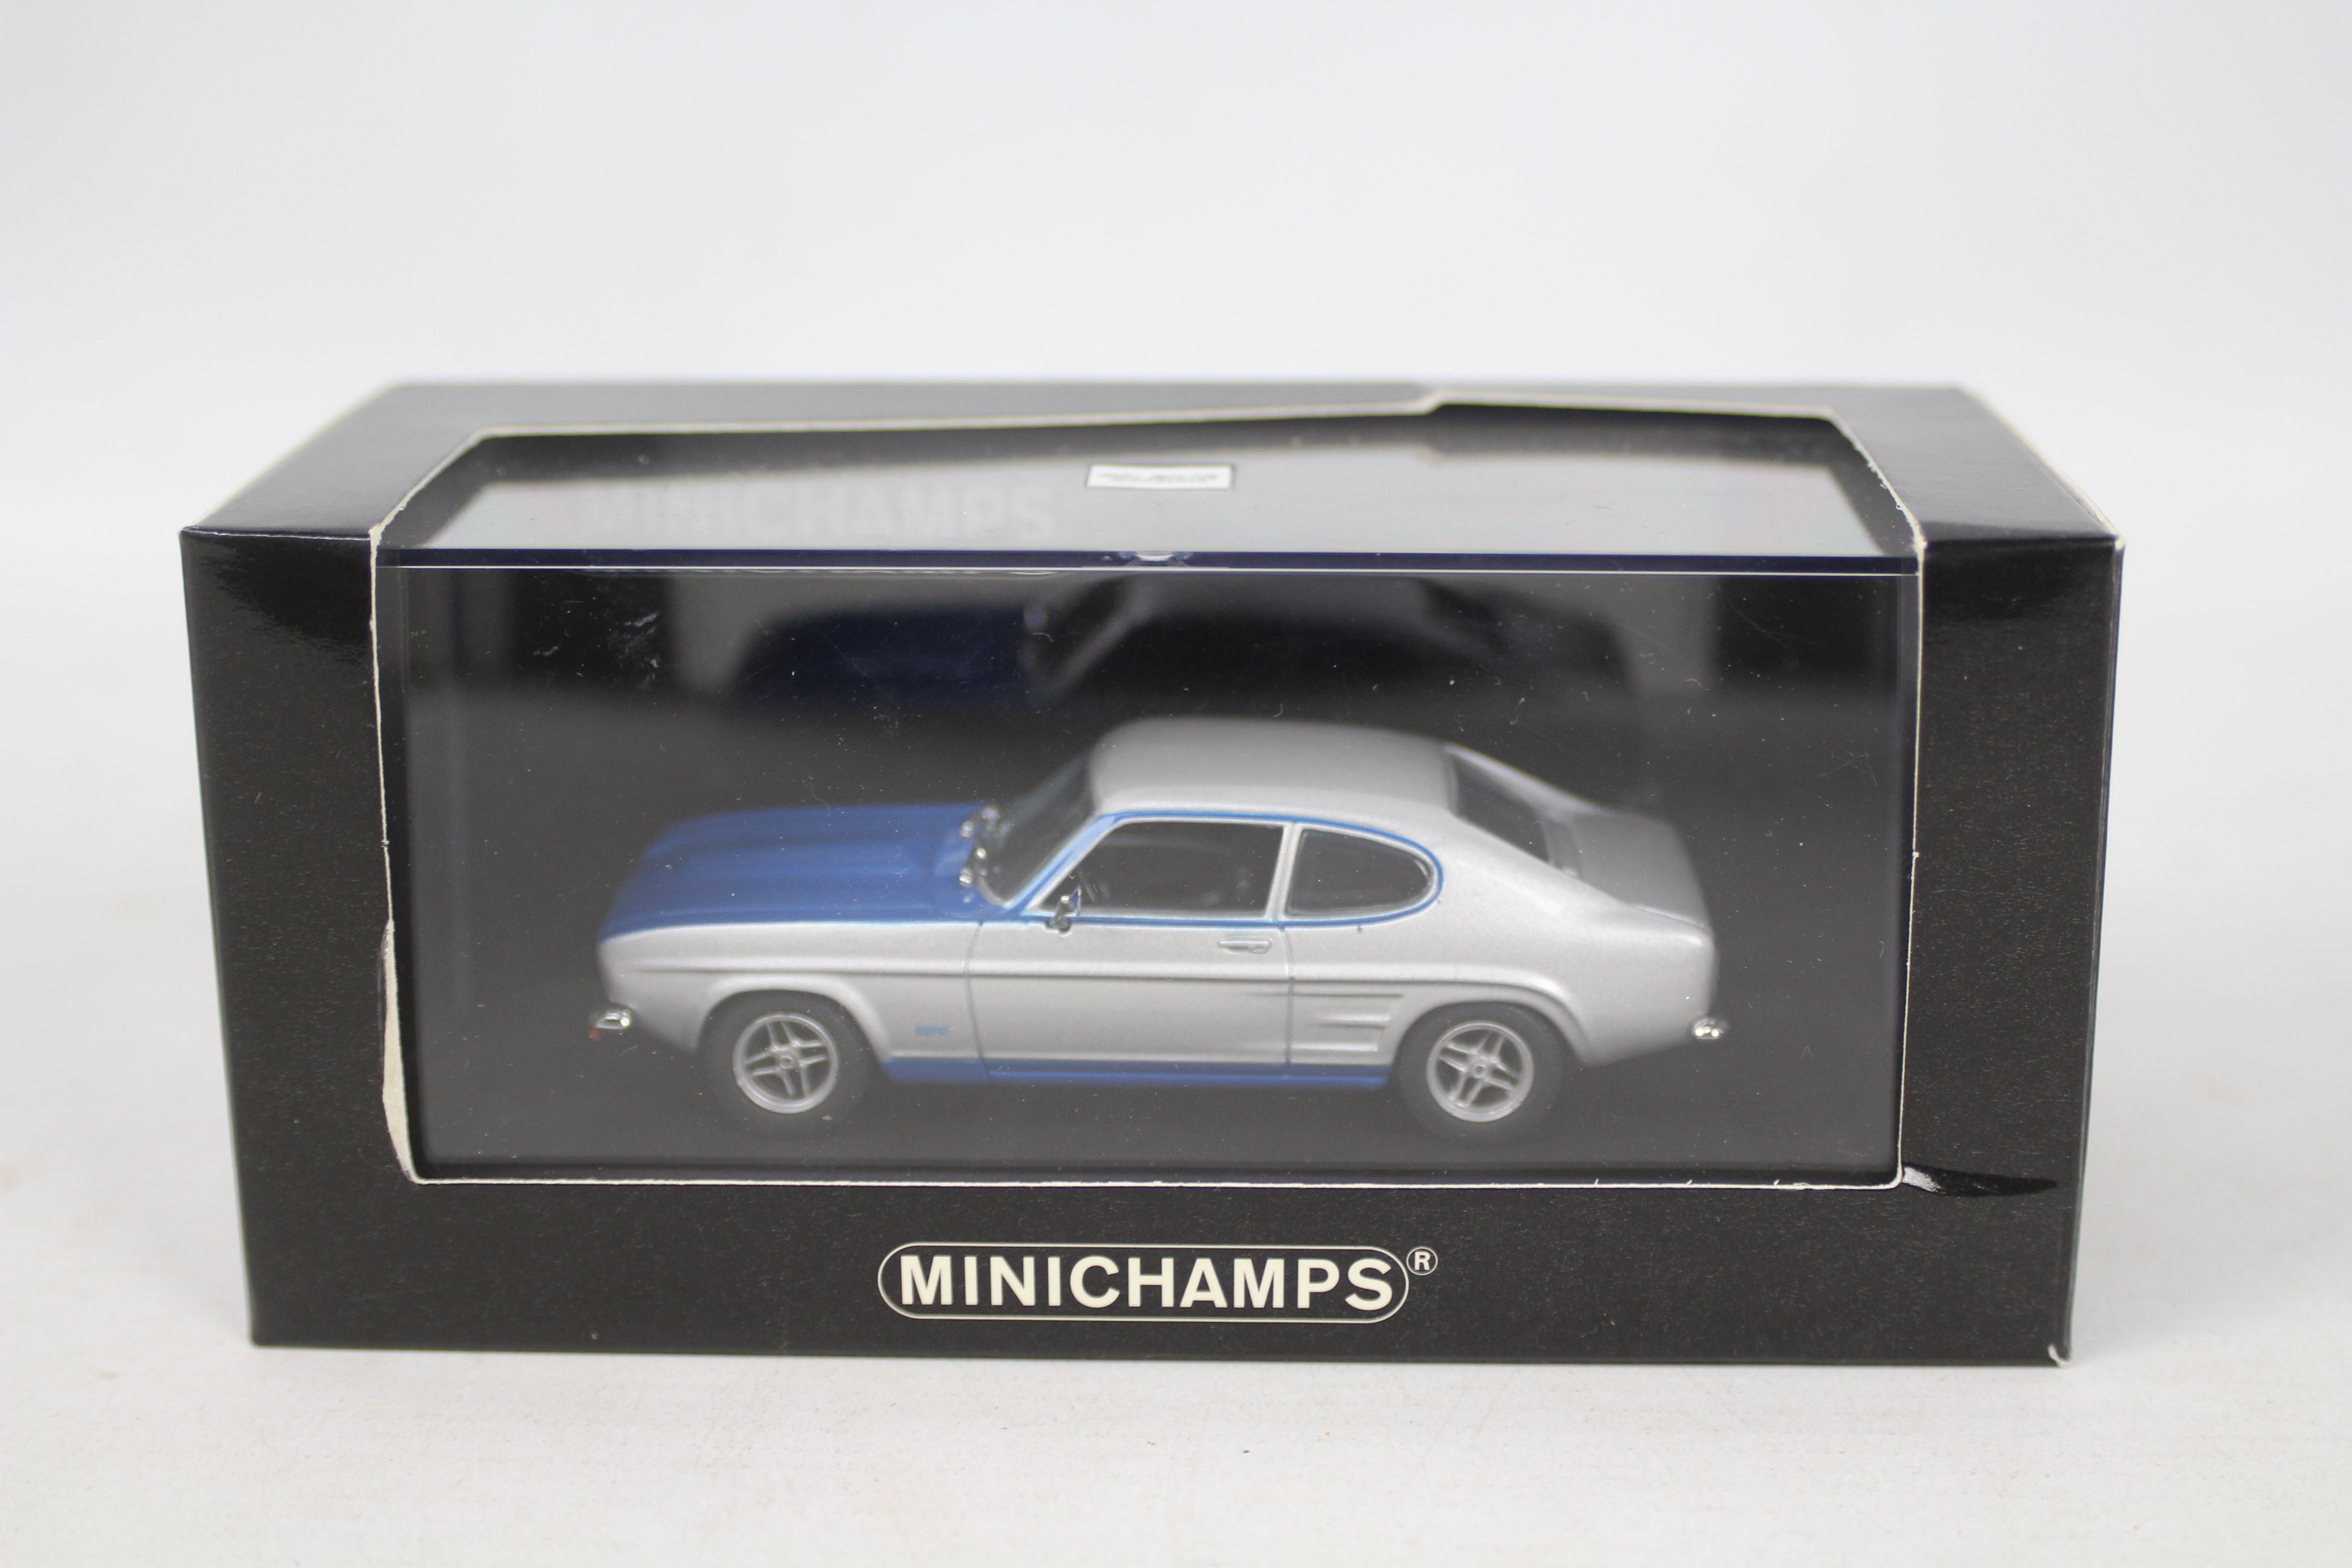 Minichamps - Two boxed Limited Edition 1:43 scale Minichamps Ford Capris. - Bild 3 aus 3